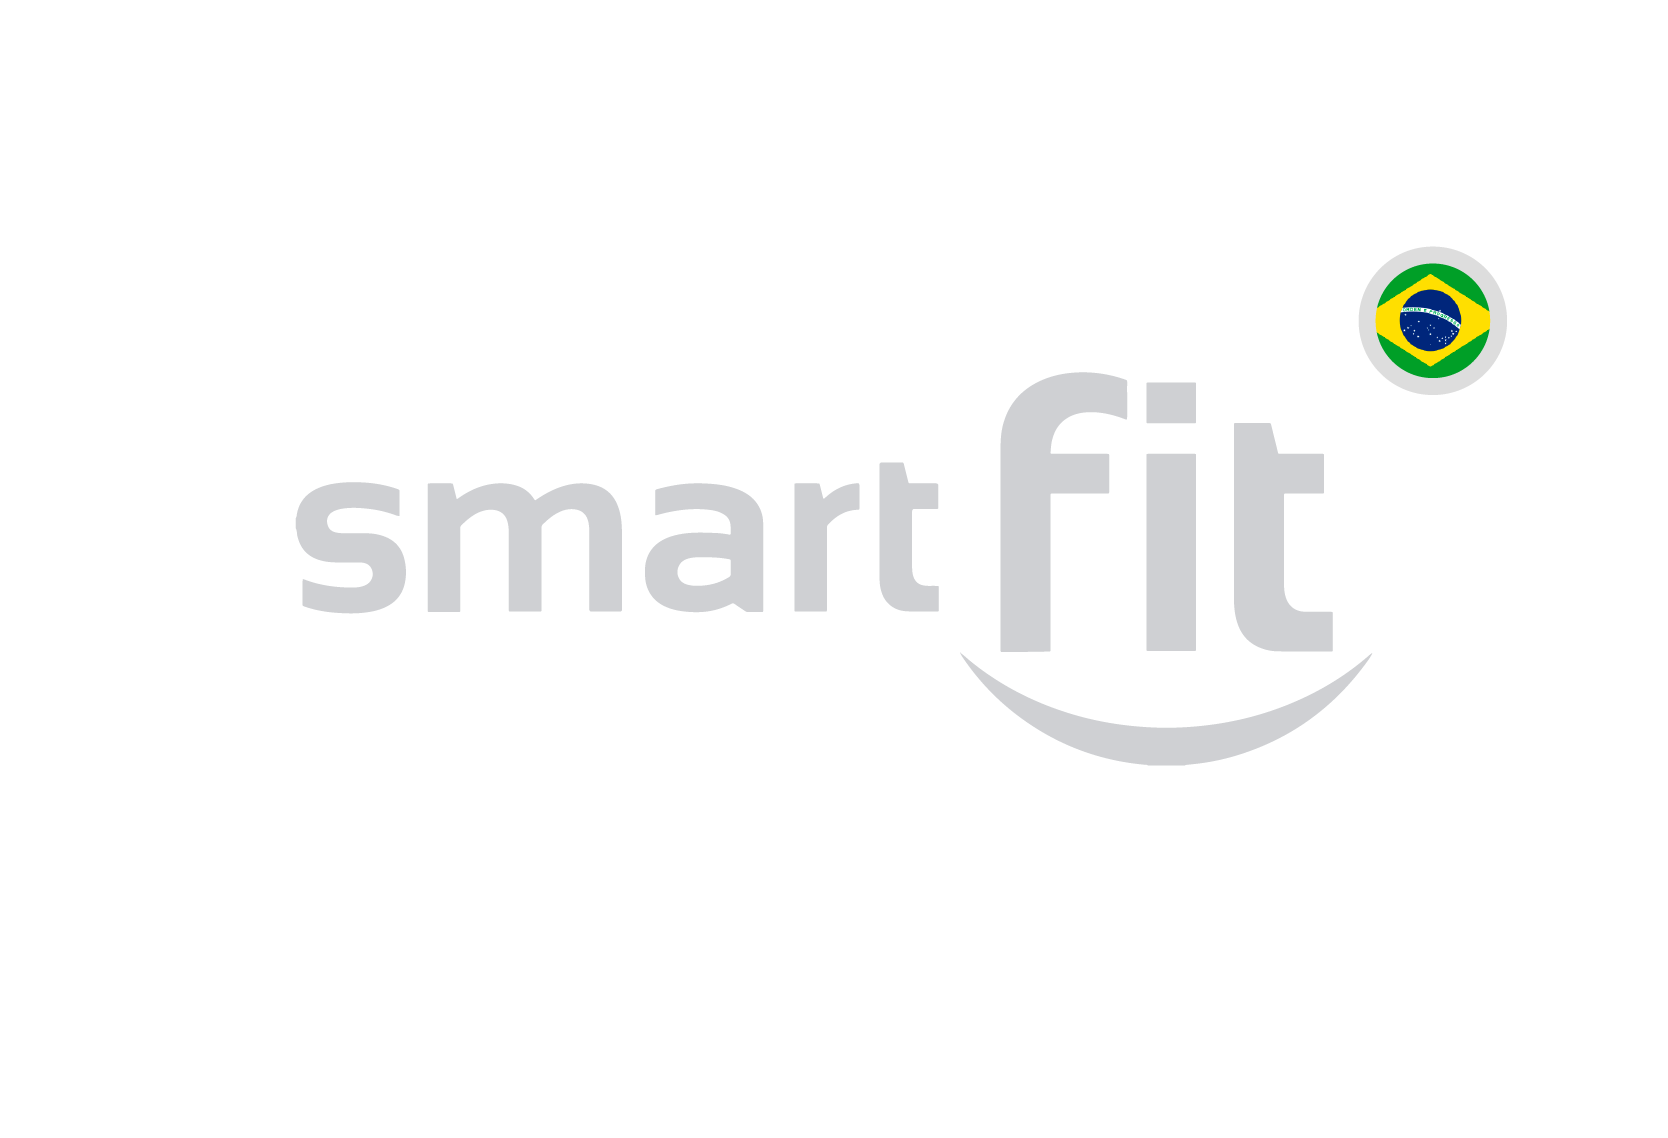 smartfit-brasil-02-1